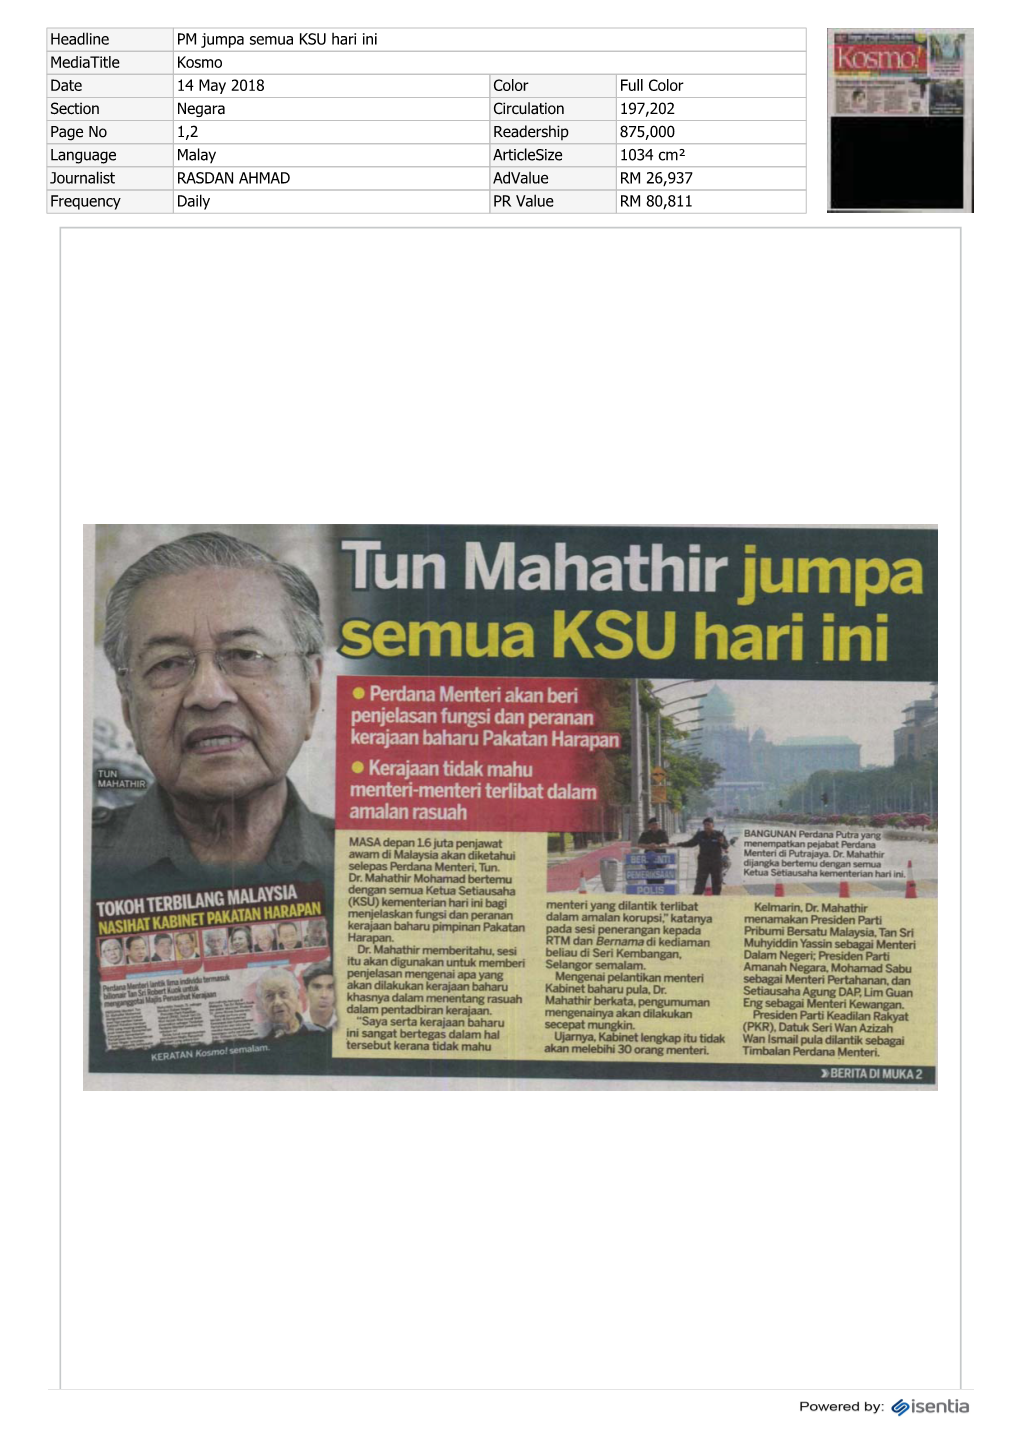 Tun Mahathir Jumpa Semua KSU Hari